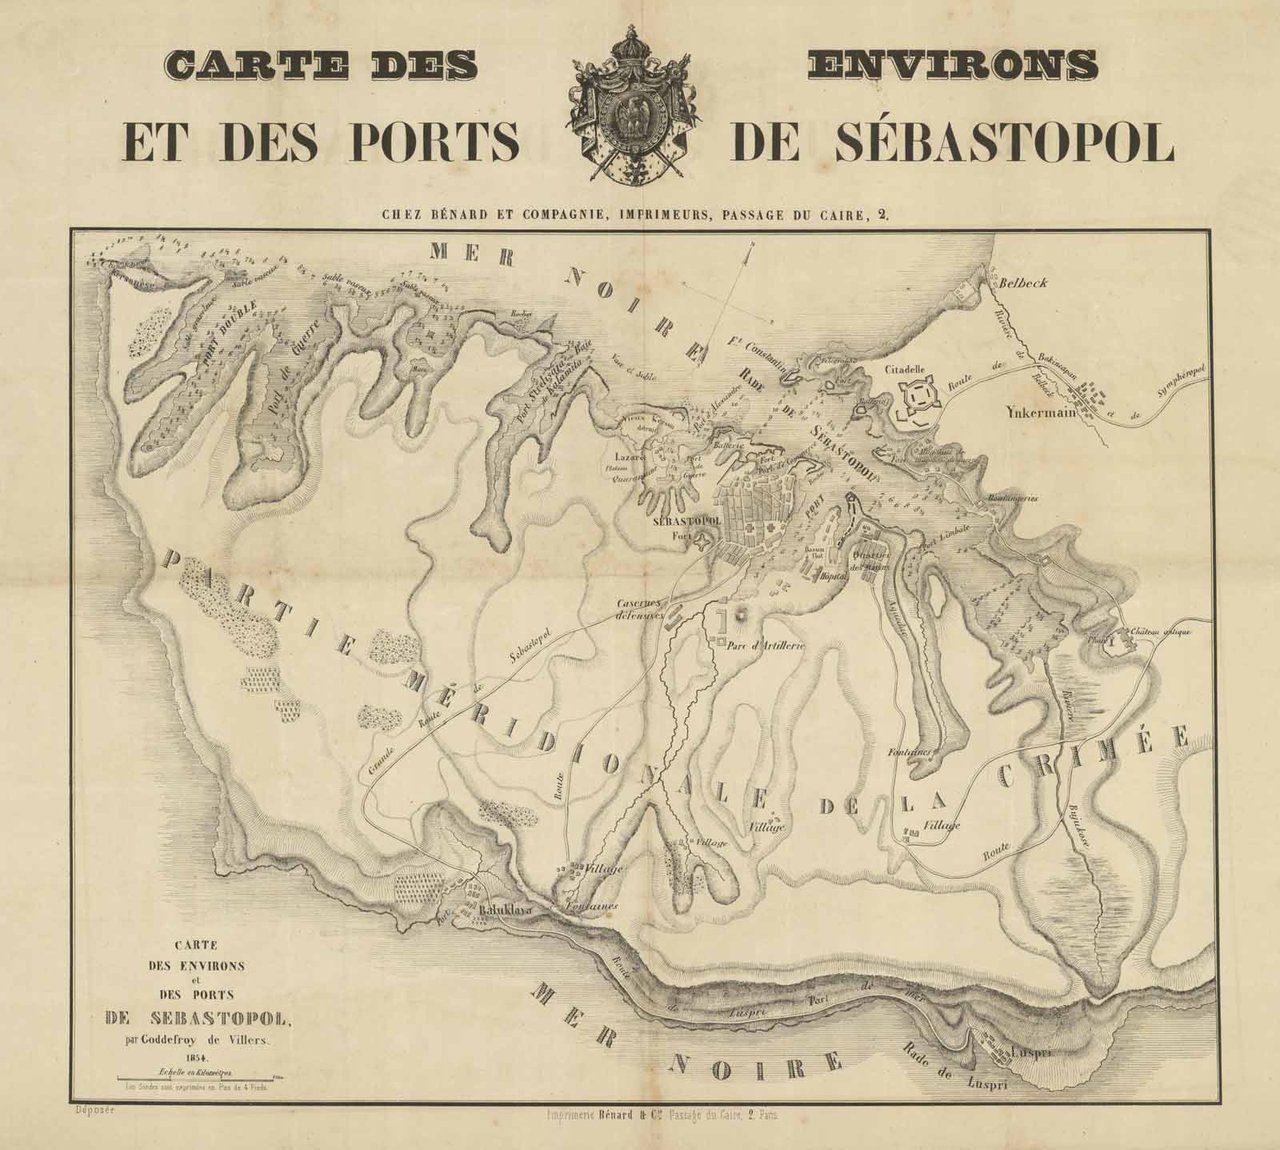 Carte des Environs et des Ports de Sebastopol